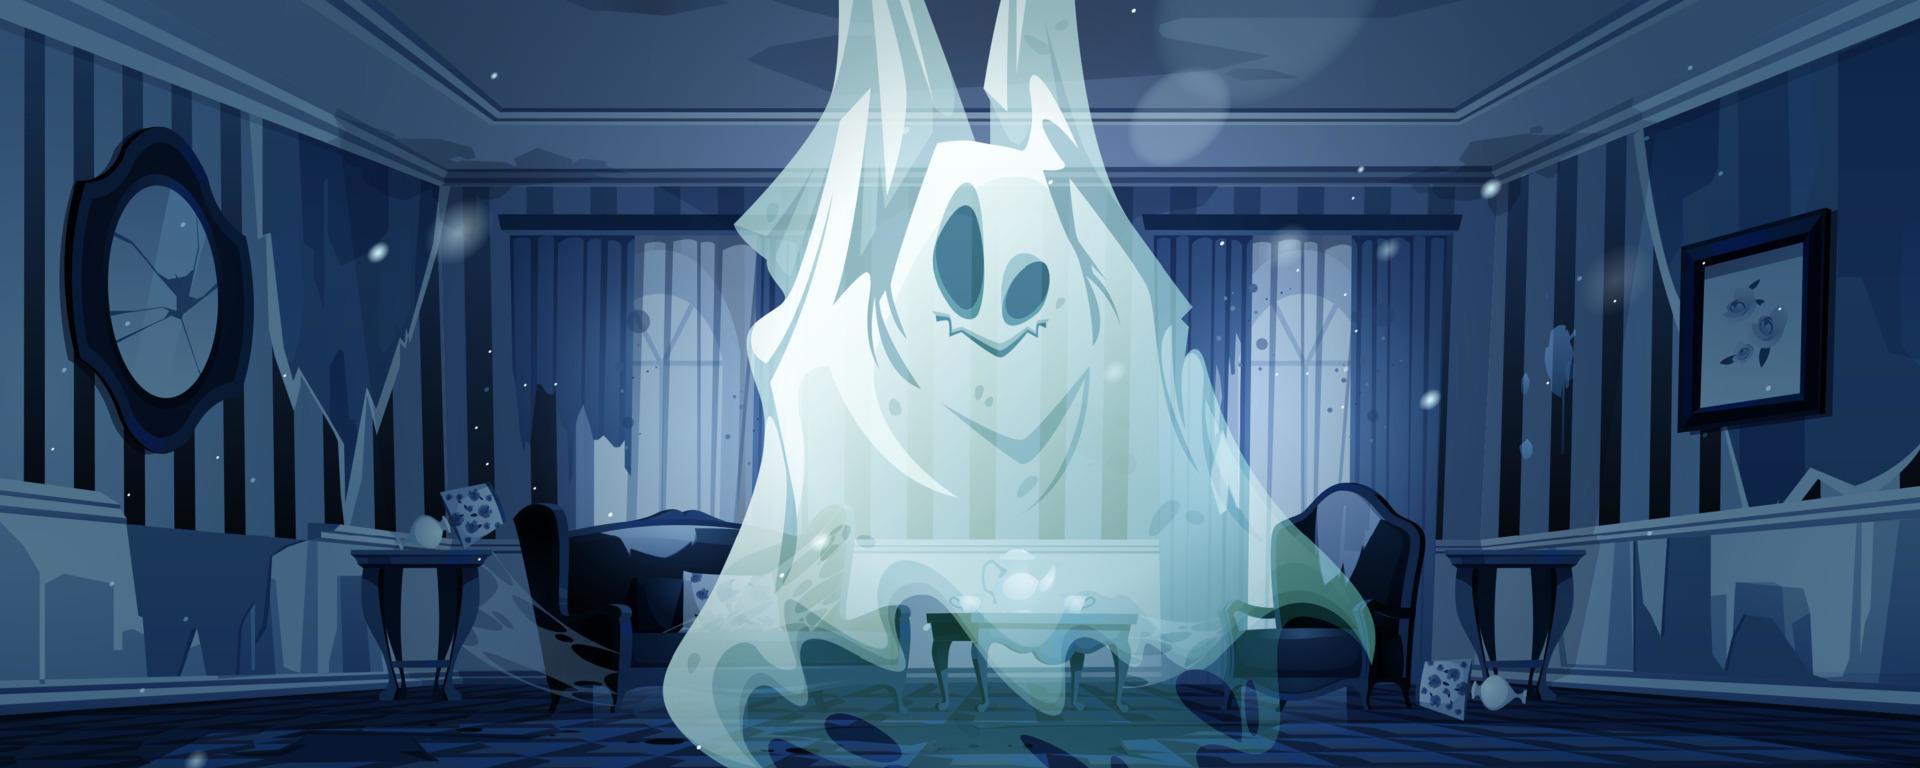 fantôme dans le salon abandonné de nuit, drôle de fantôme vecteur